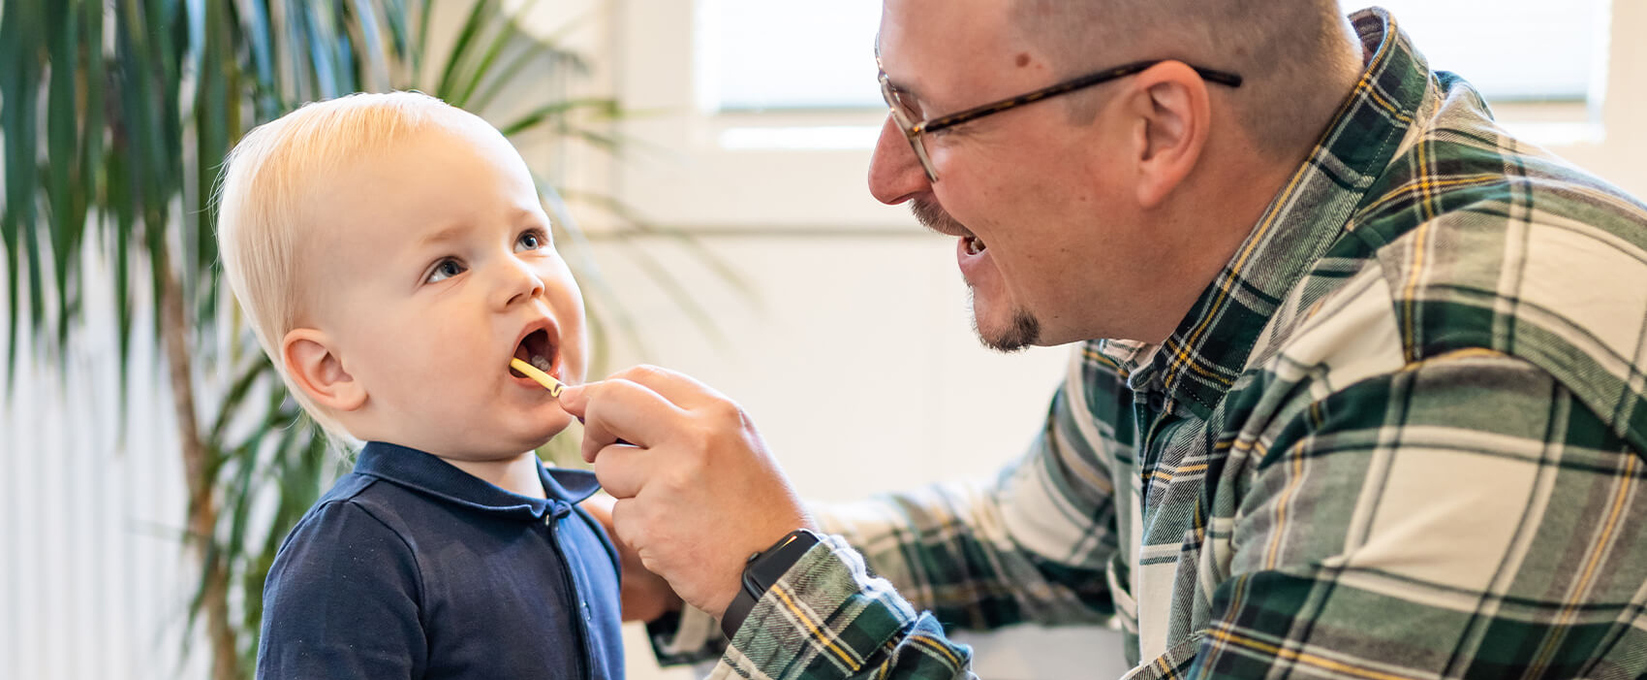 Junger Mann putzt die Zähne eines Kleinkindes.